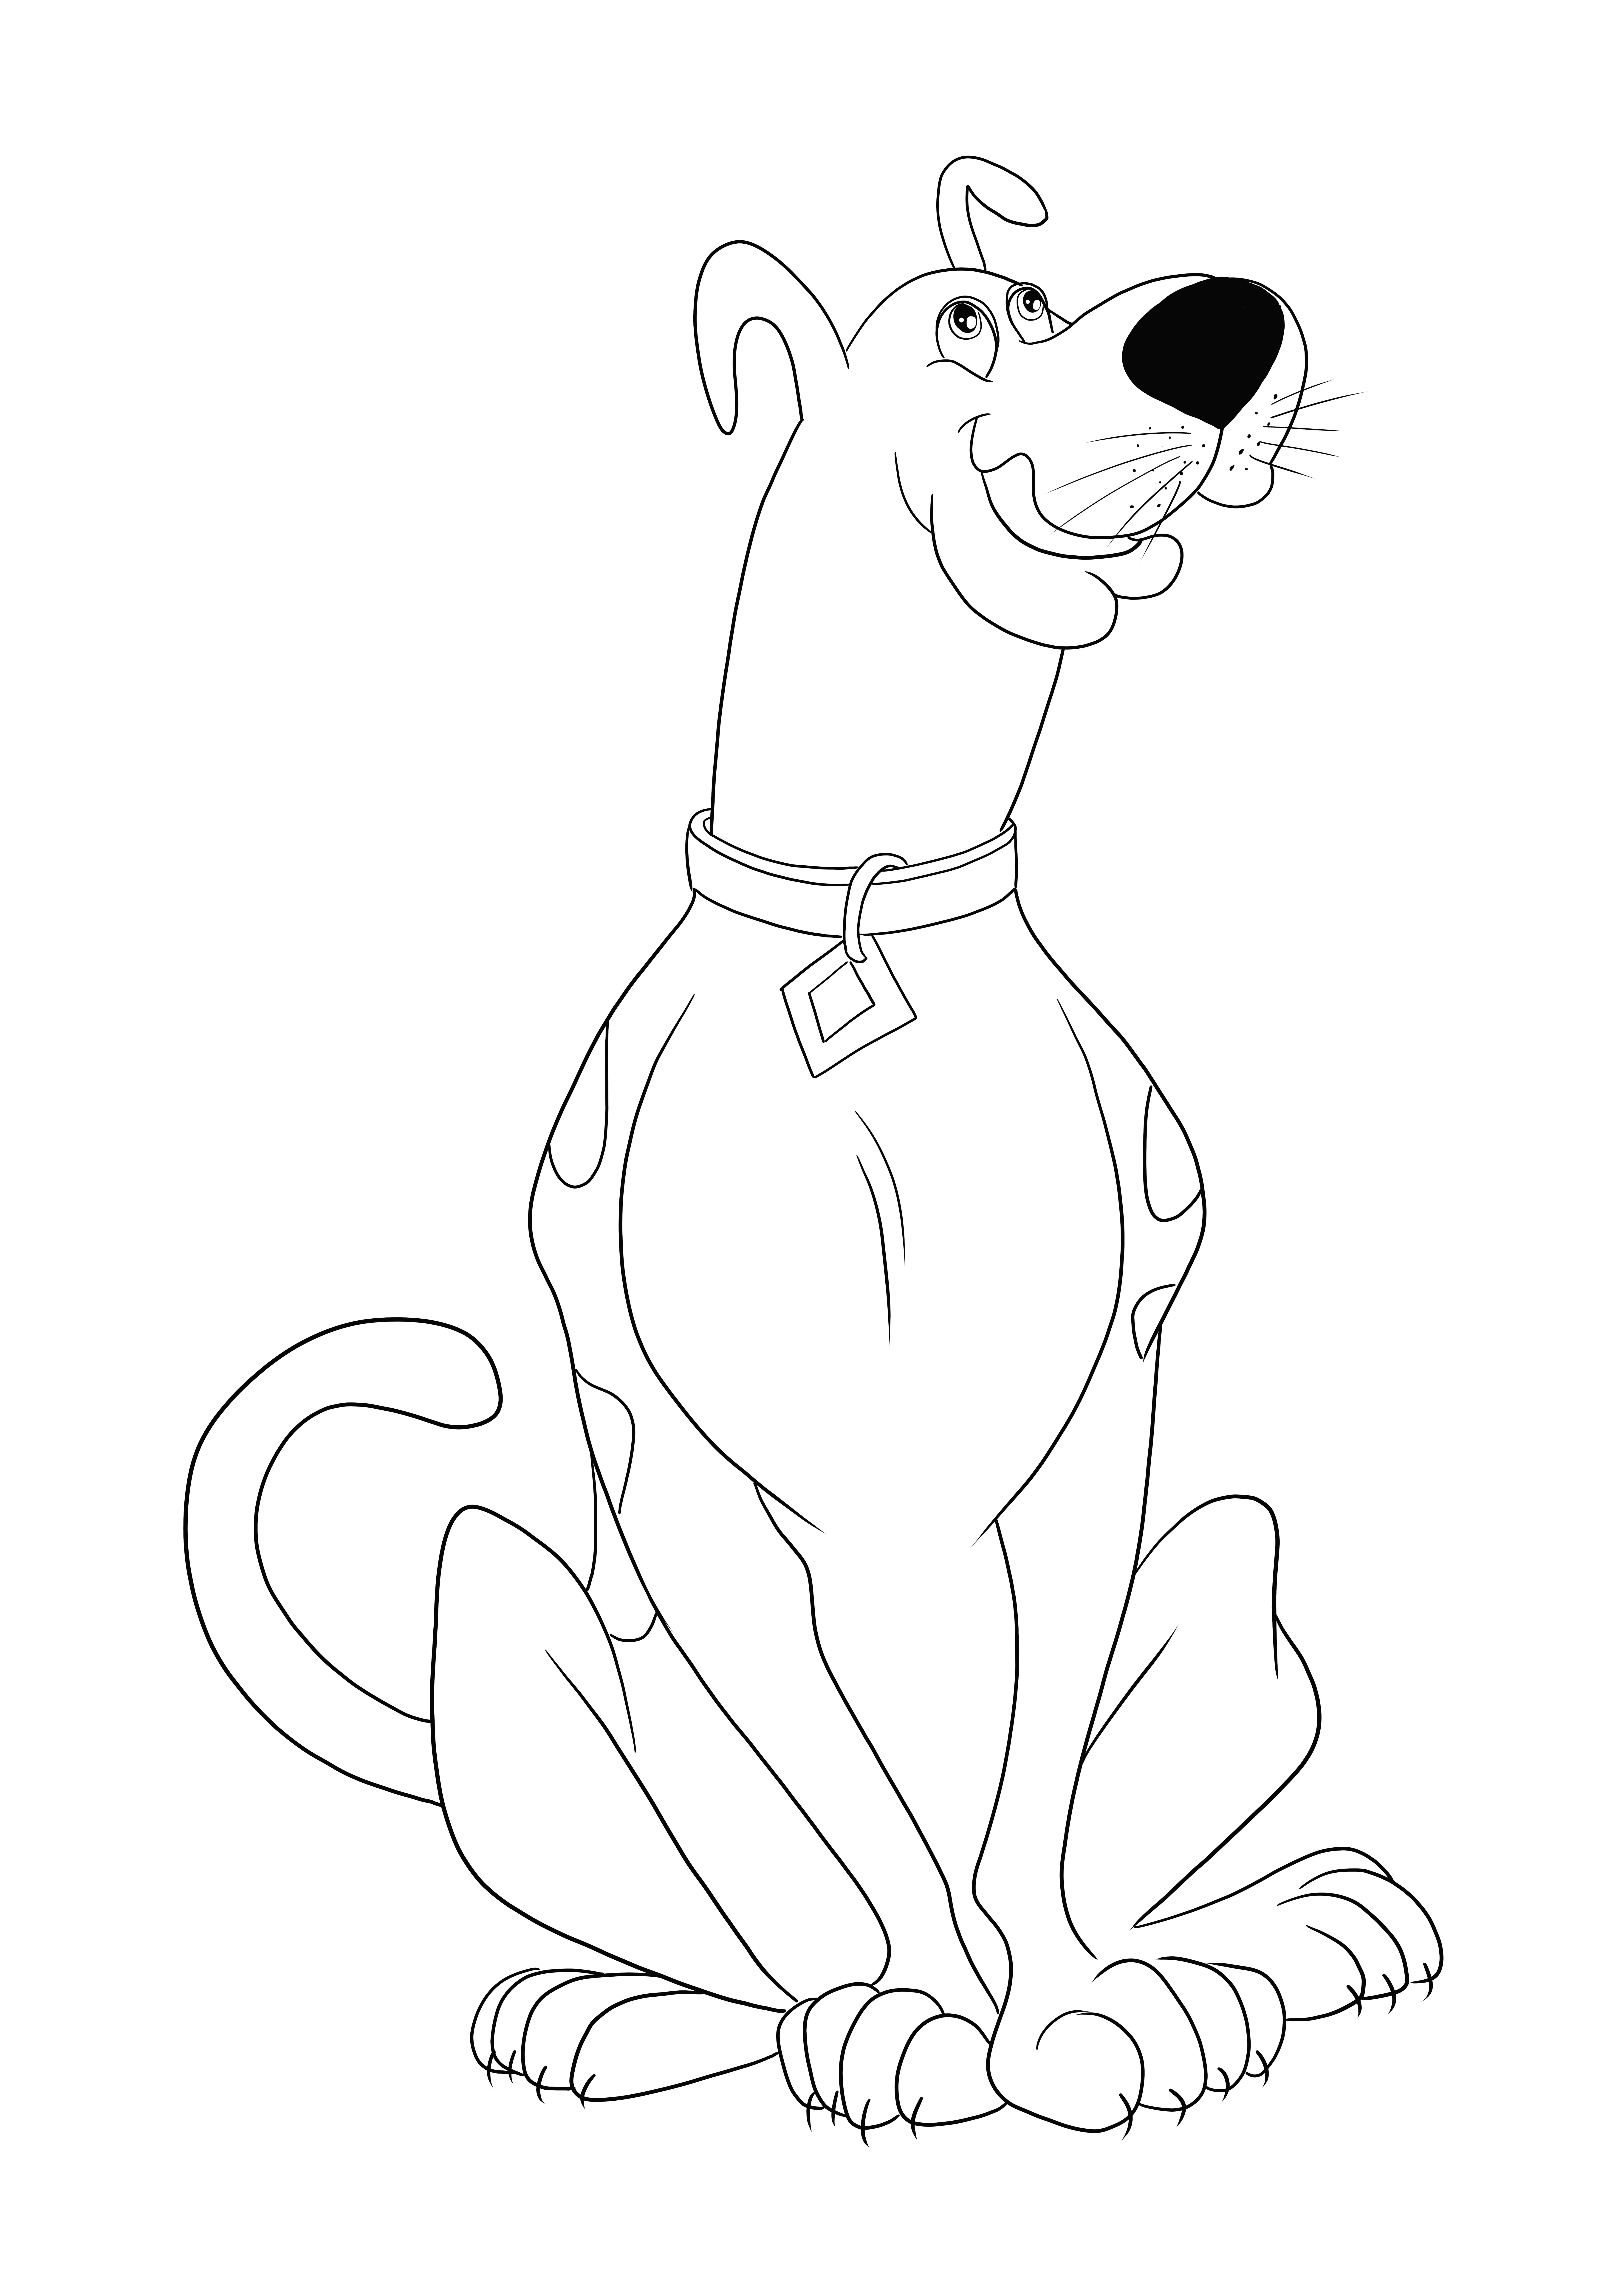 Aqui está o nosso famoso desenho de Scooby Doo para colorir, imprimir ou baixar grátis